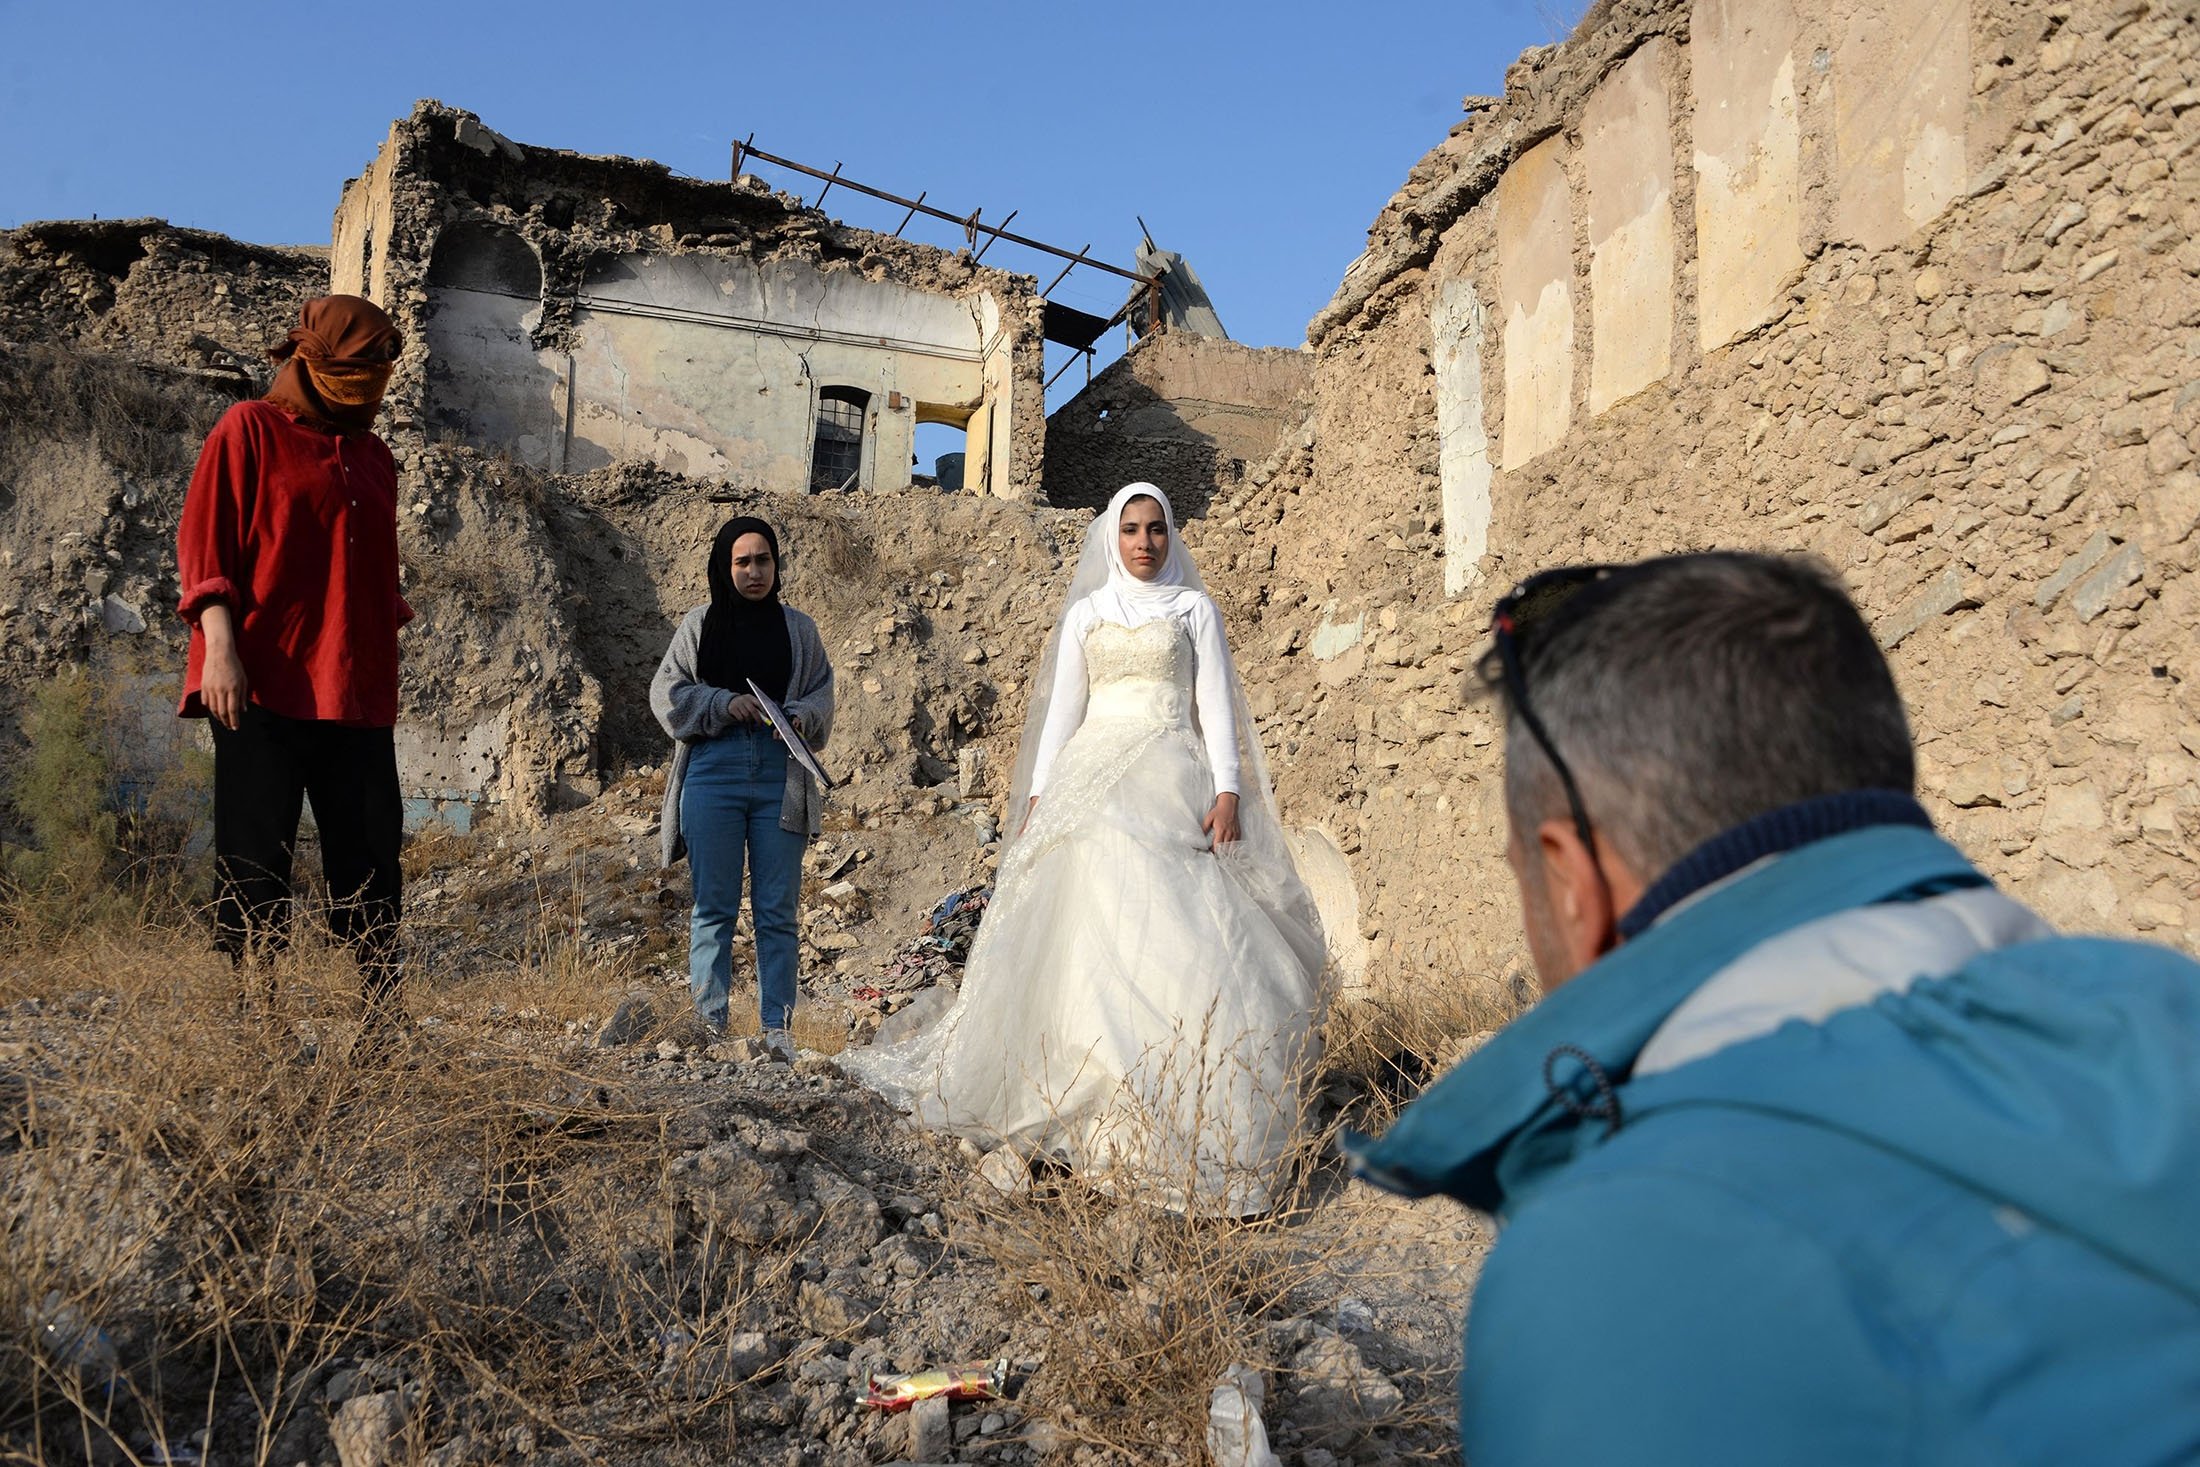 Siswa sekolah film mengerjakan adegan dengan aktor berpakaian pengantin, di kota utara Mosul yang dilanda perang, Irak, 15 Desember 2021. (AFP Photo)